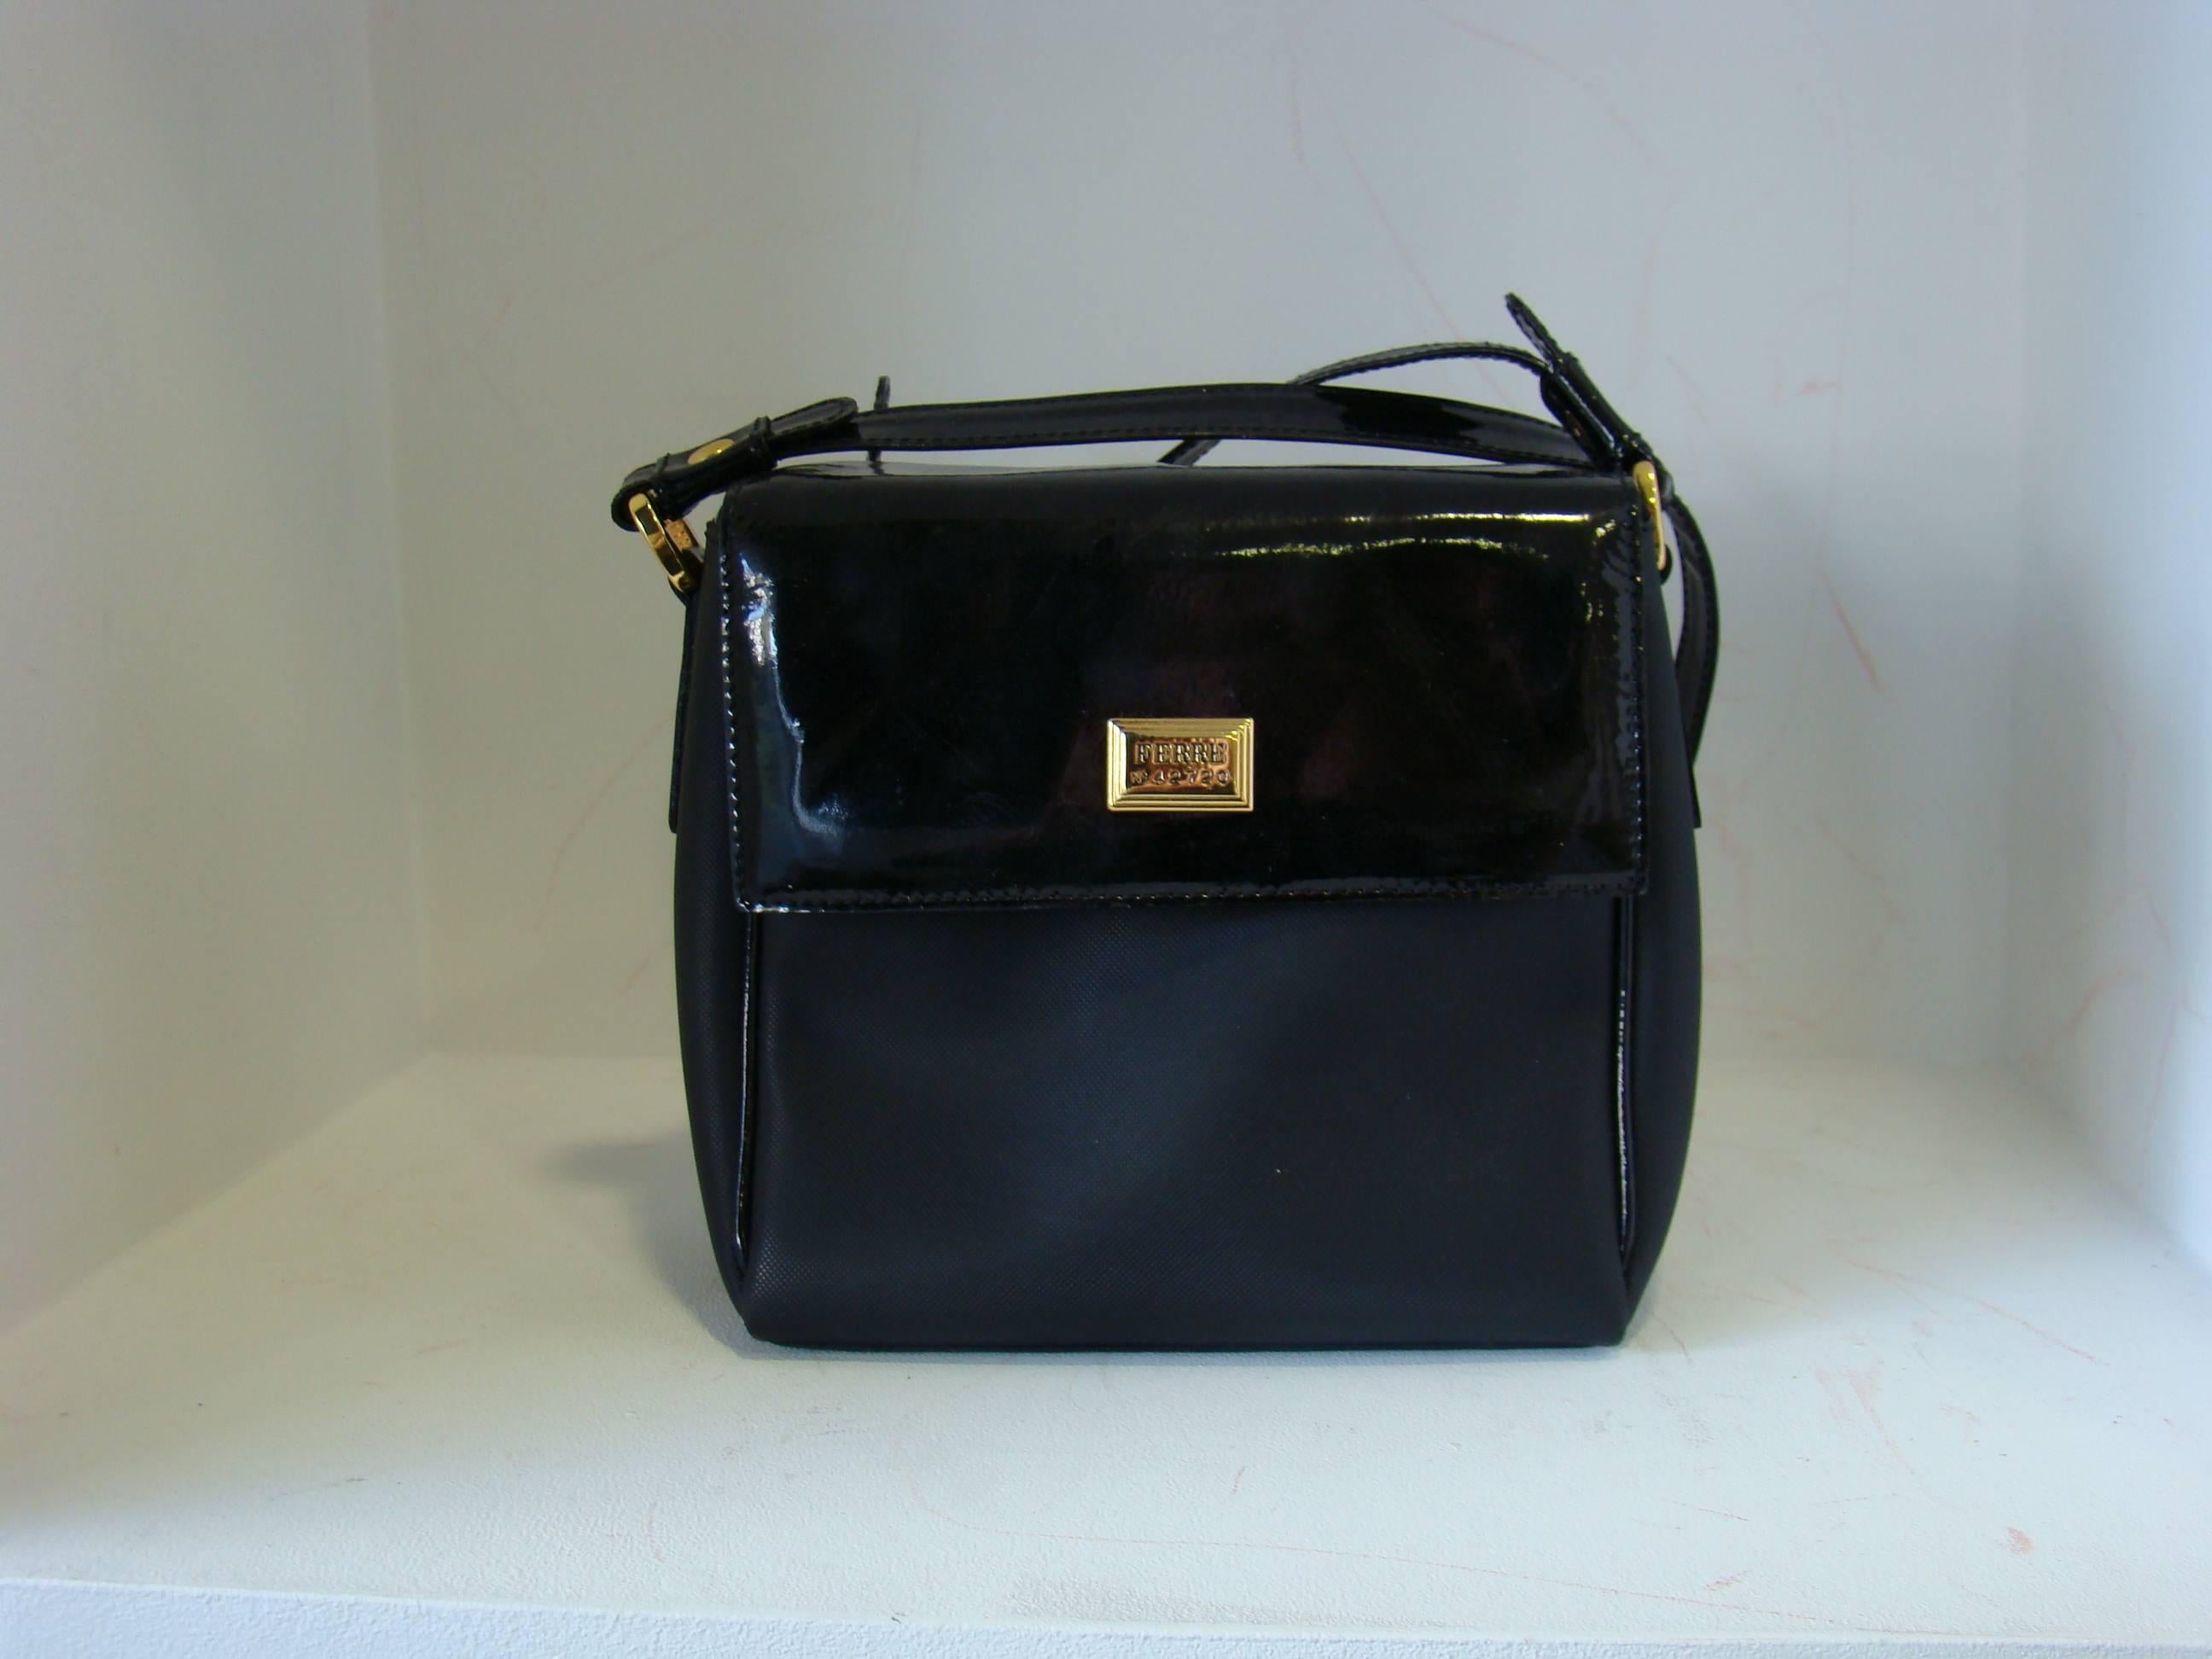 Gianfranco Ferre Black Leather Shoulder Bag. Length 18cm, height 18cm, width 8cm